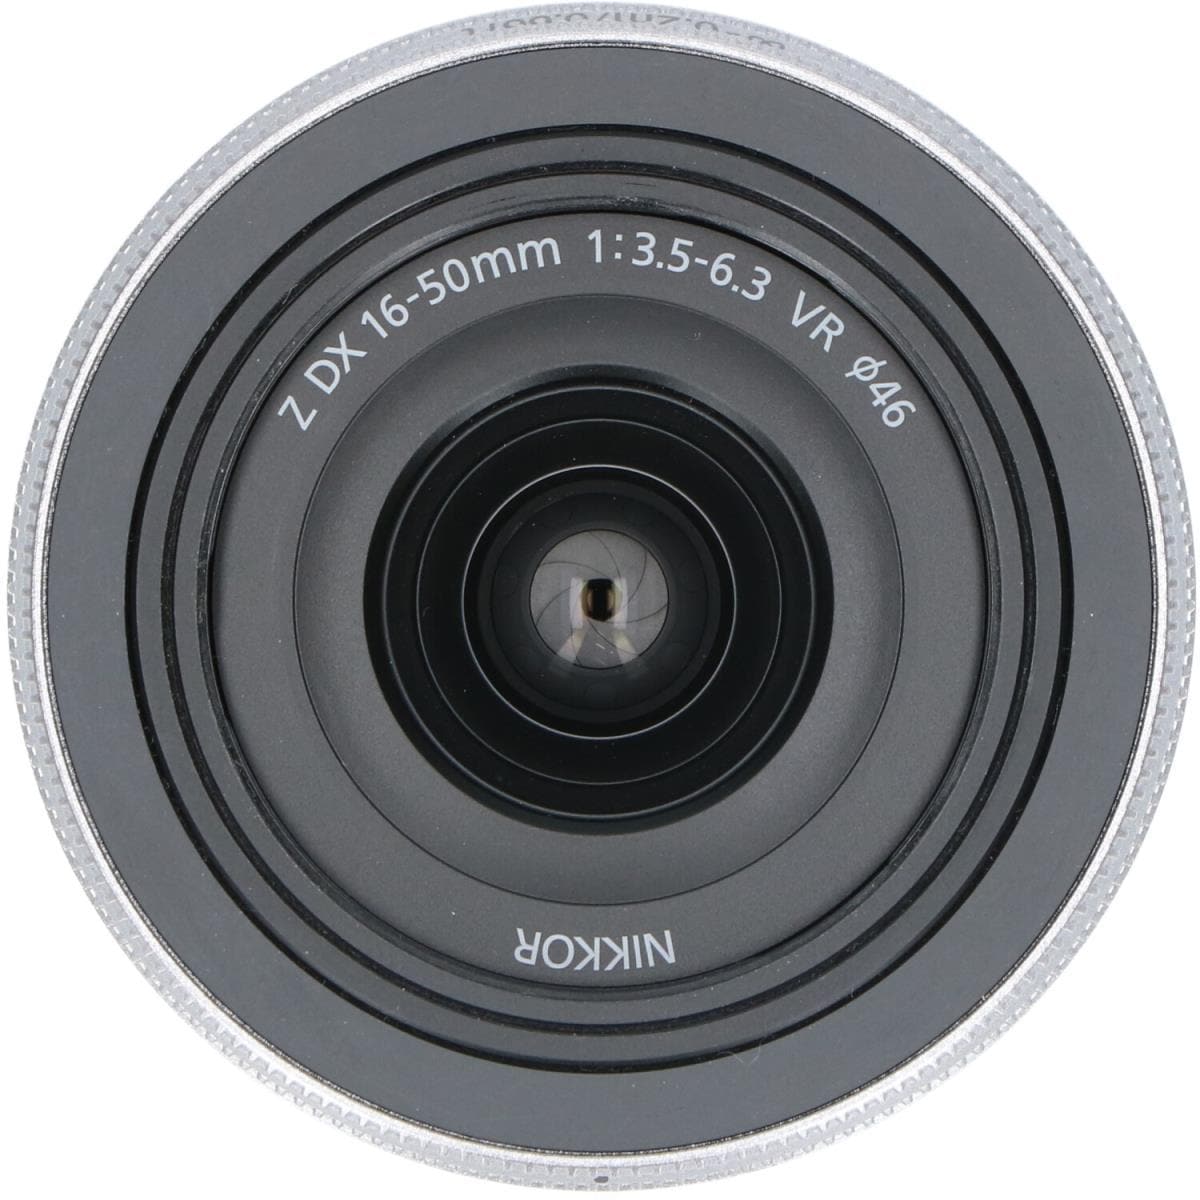 NIKON Z DX16-50mm F3.5-6.3VR SV